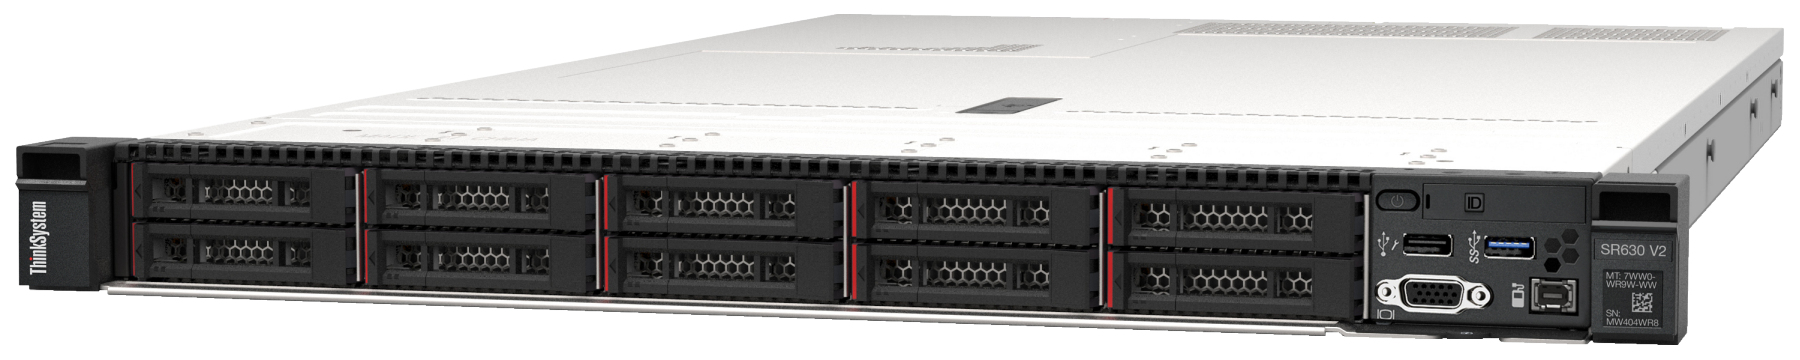 Сервер Lenovo ThinkSystem SR630 V2 (7Z71A059EA). Фиксированная комплектация сервера